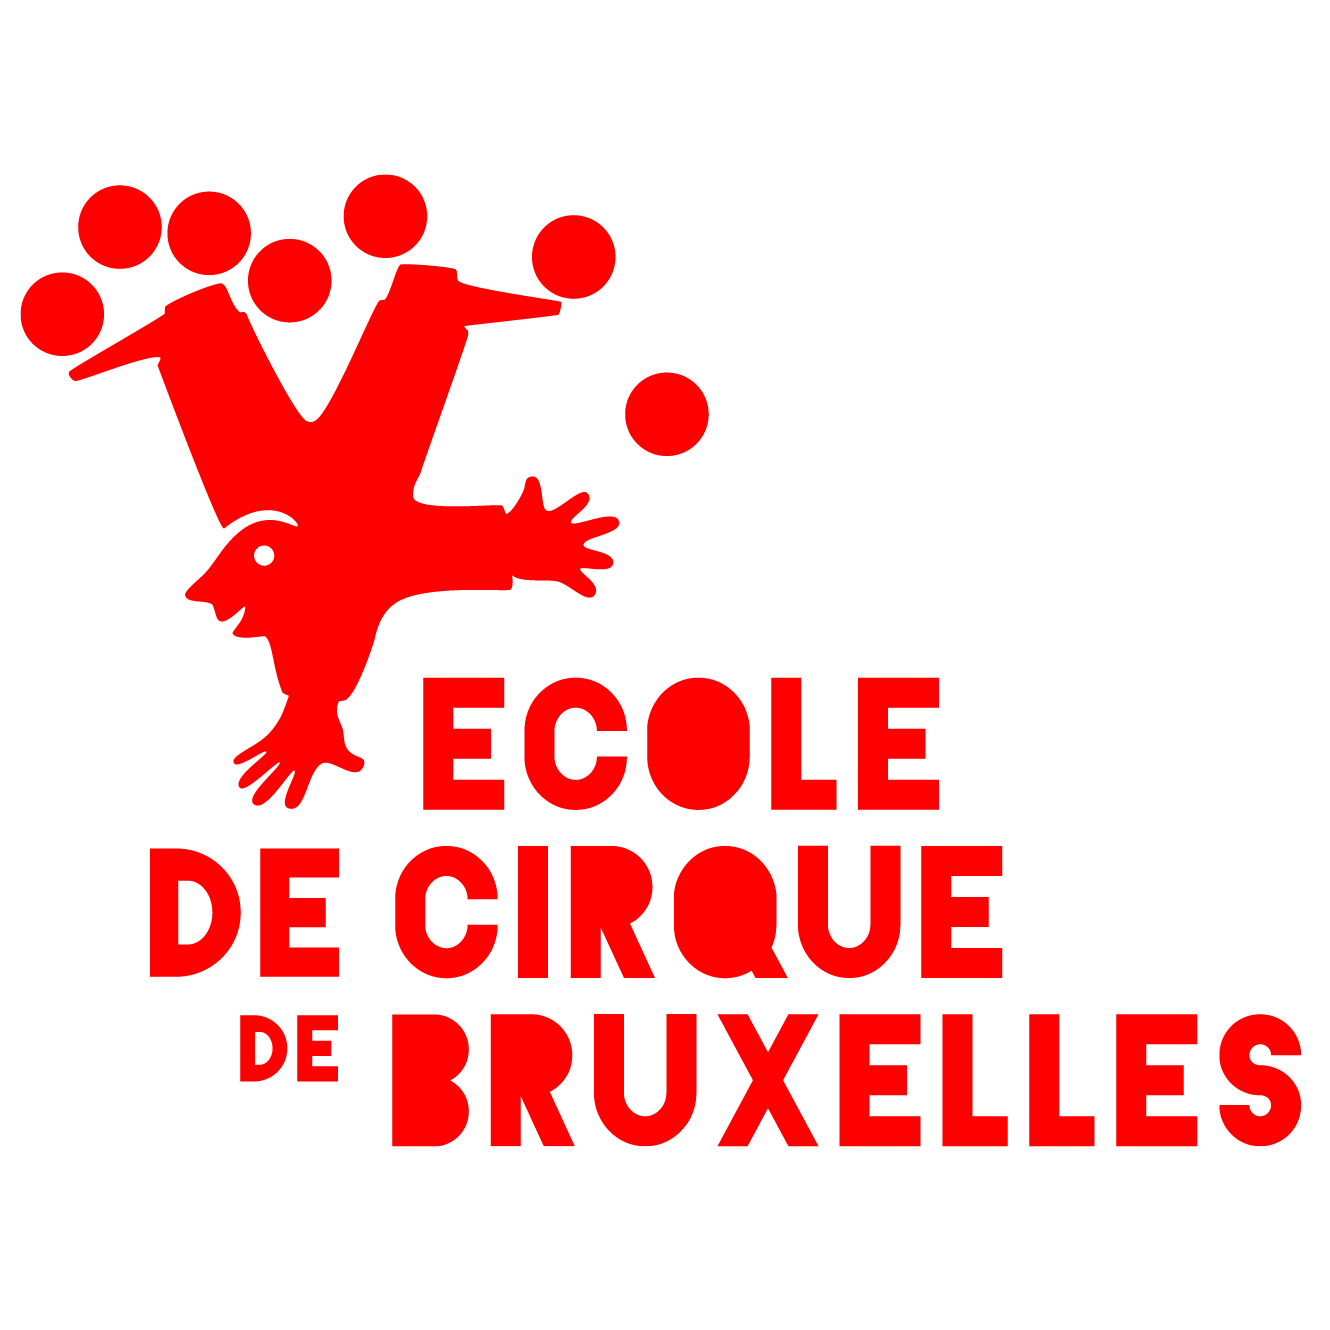 Ecole de Cirque de Bruxelles